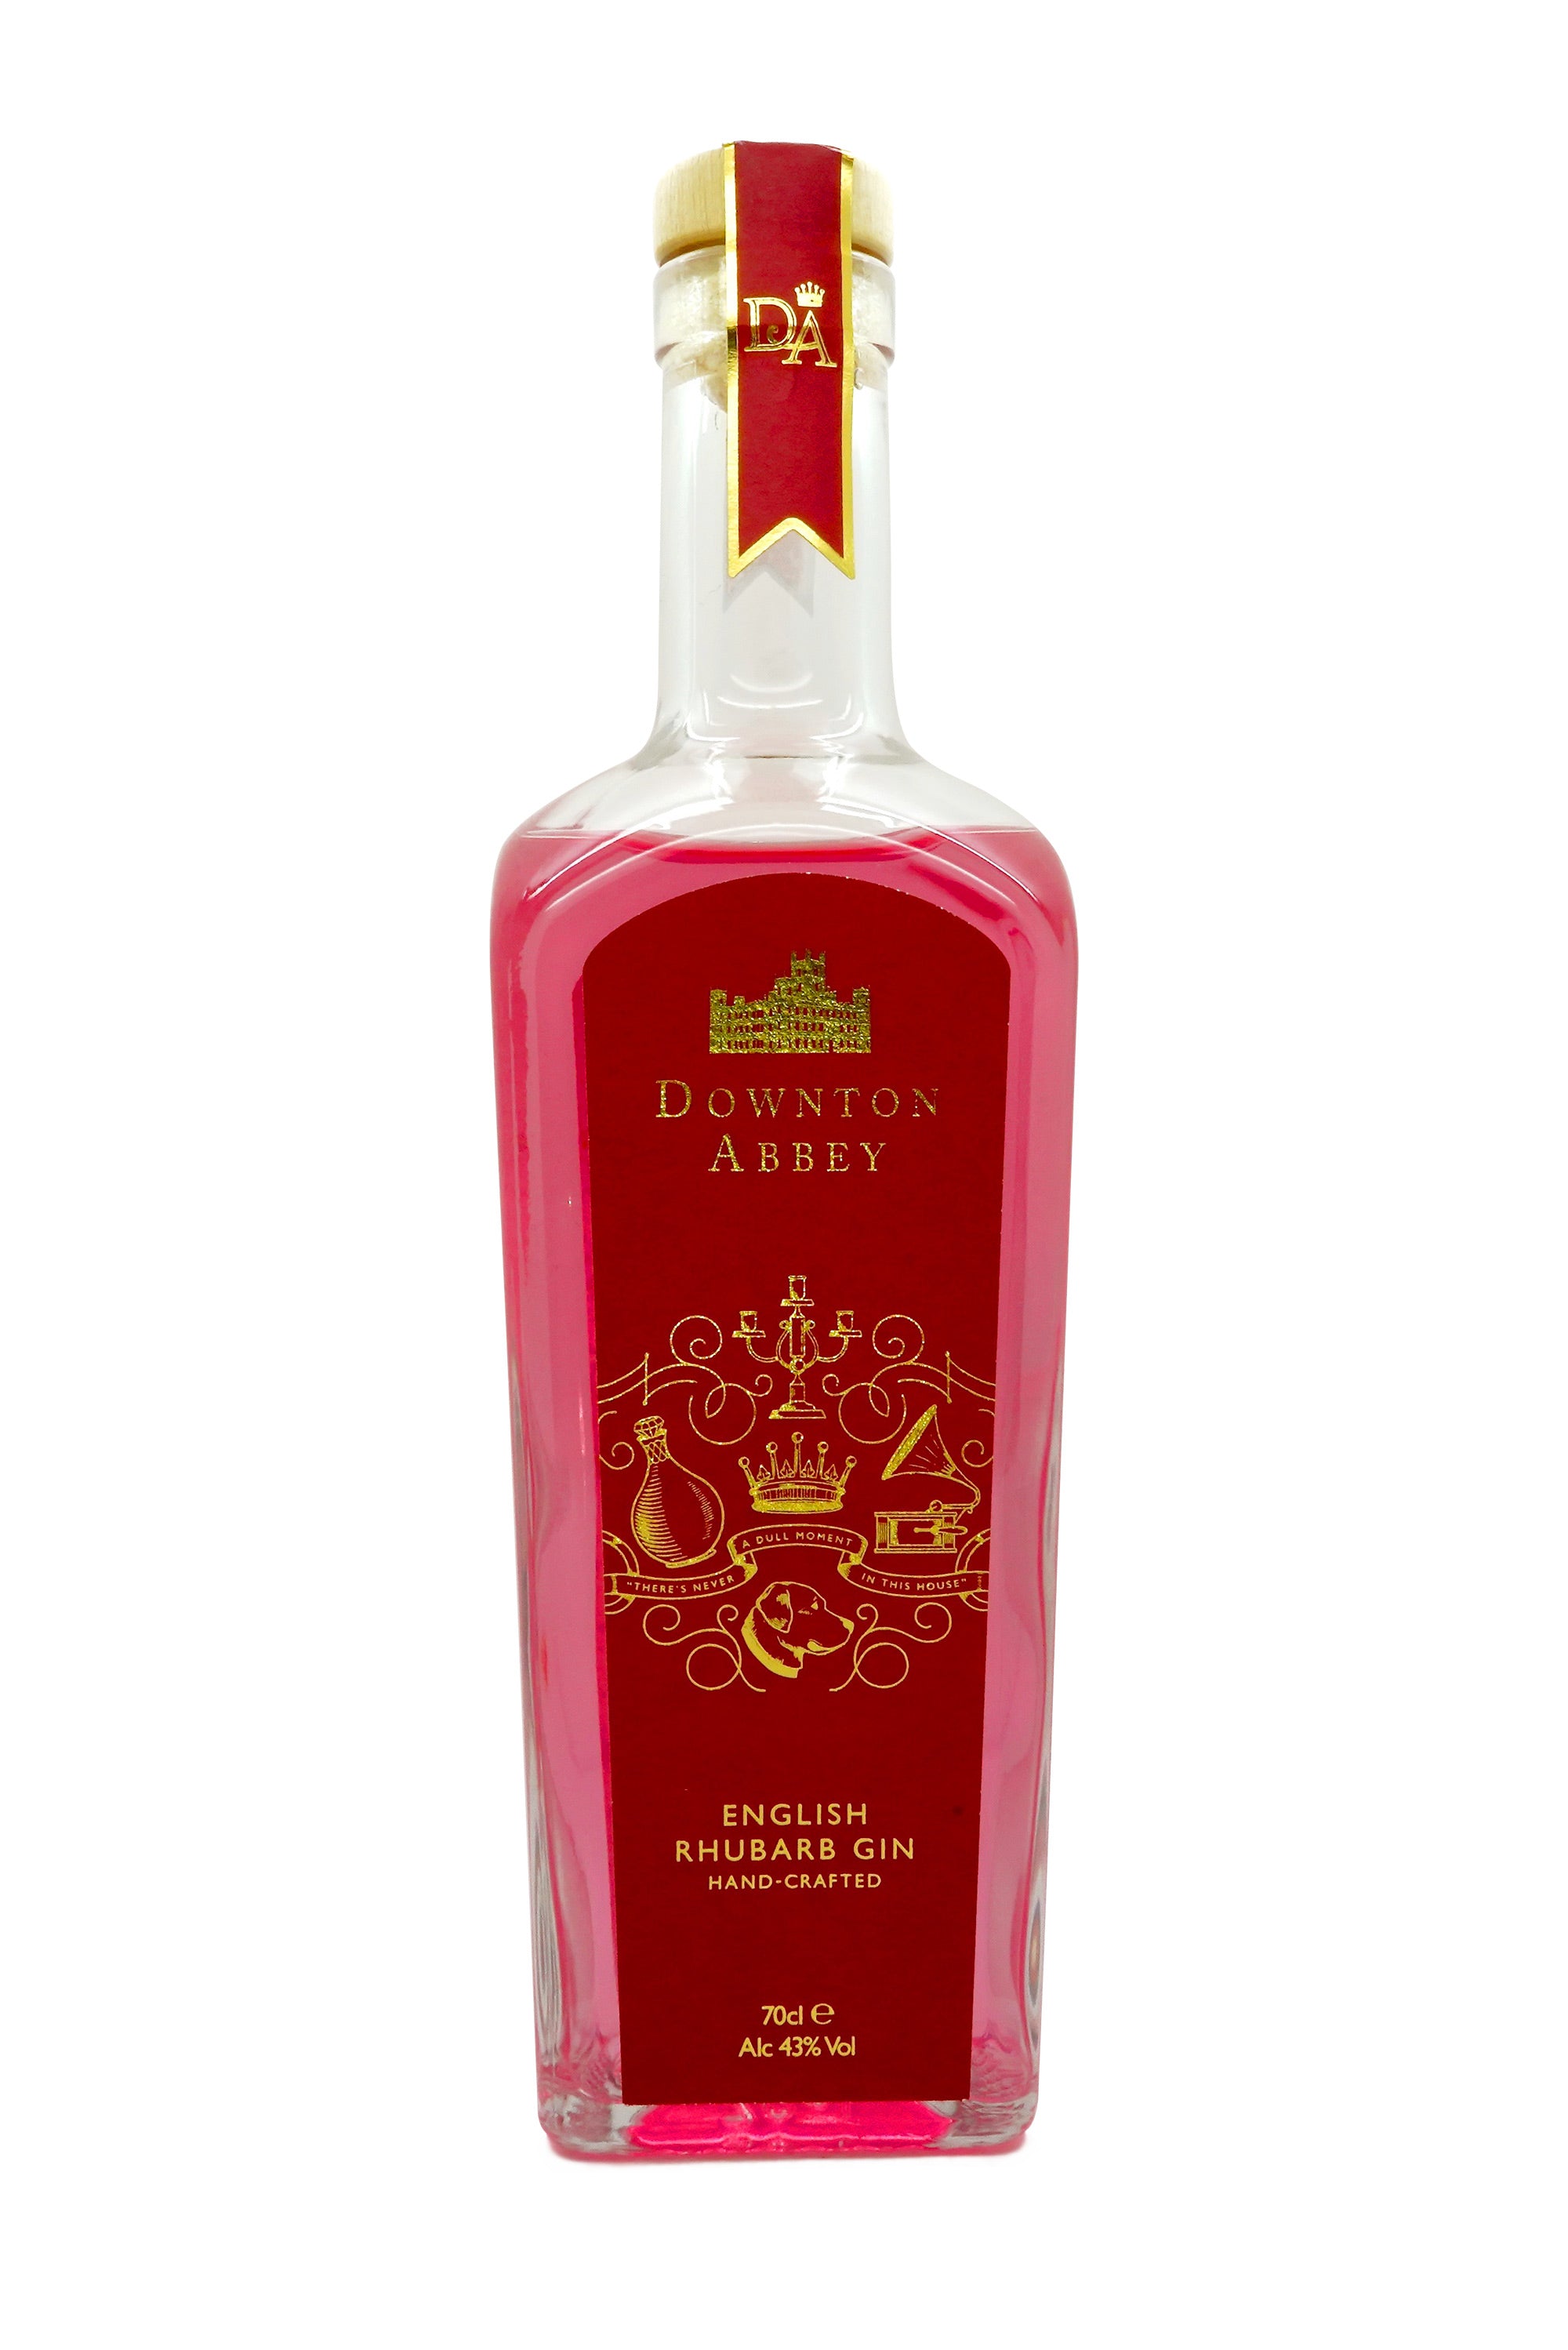 Downton Abbey English Rhubarb Gin